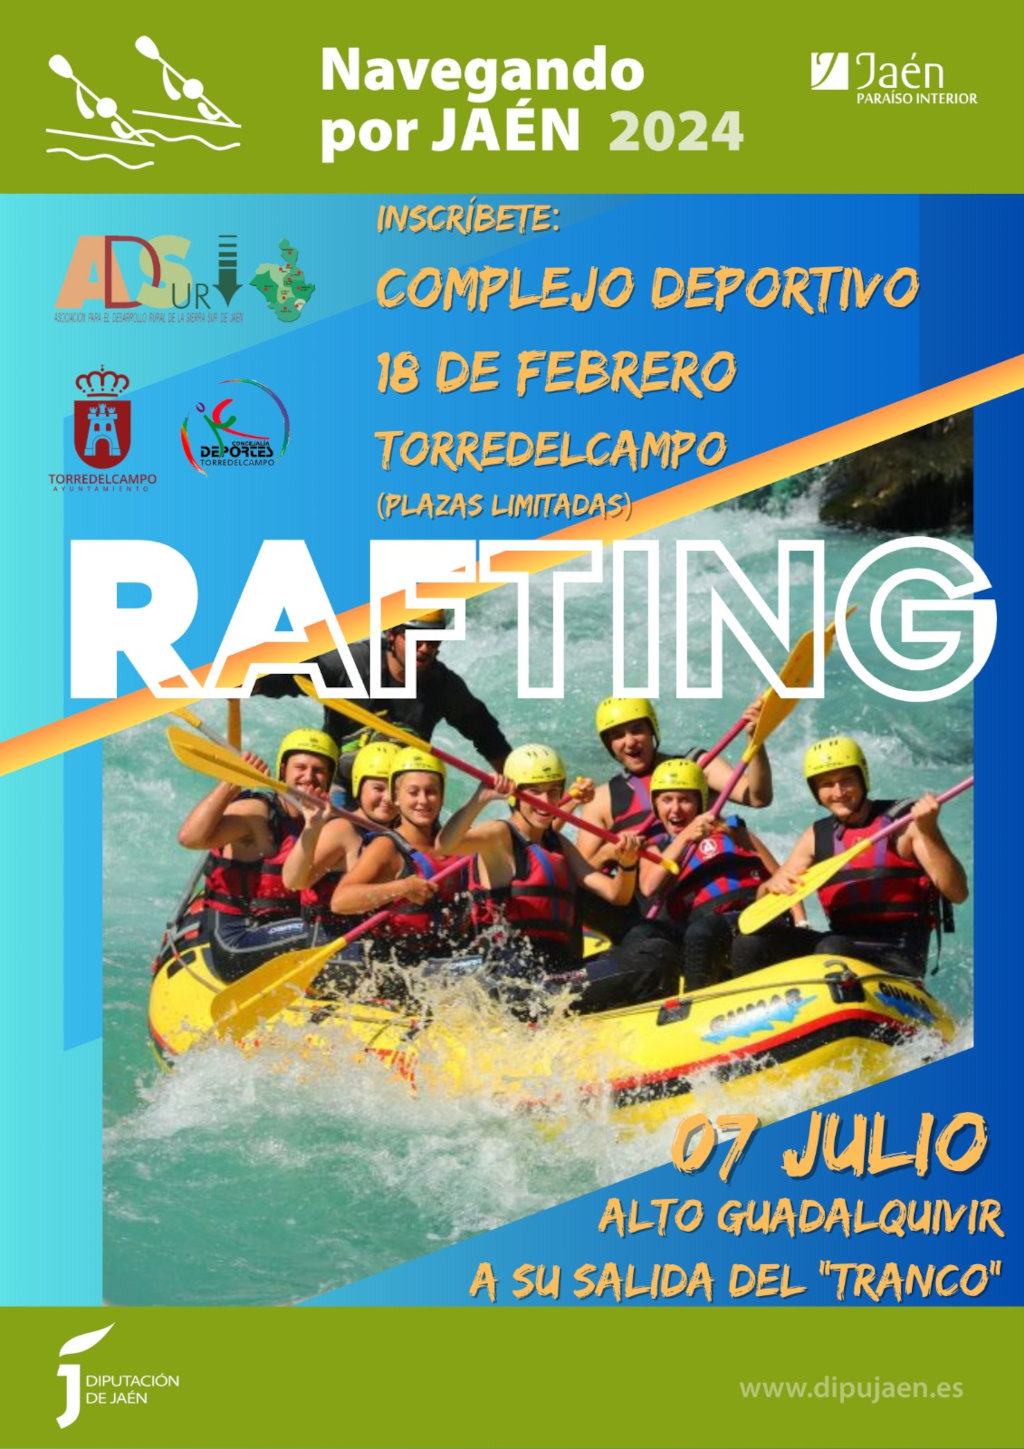 Navegando por Jaén - Rafting